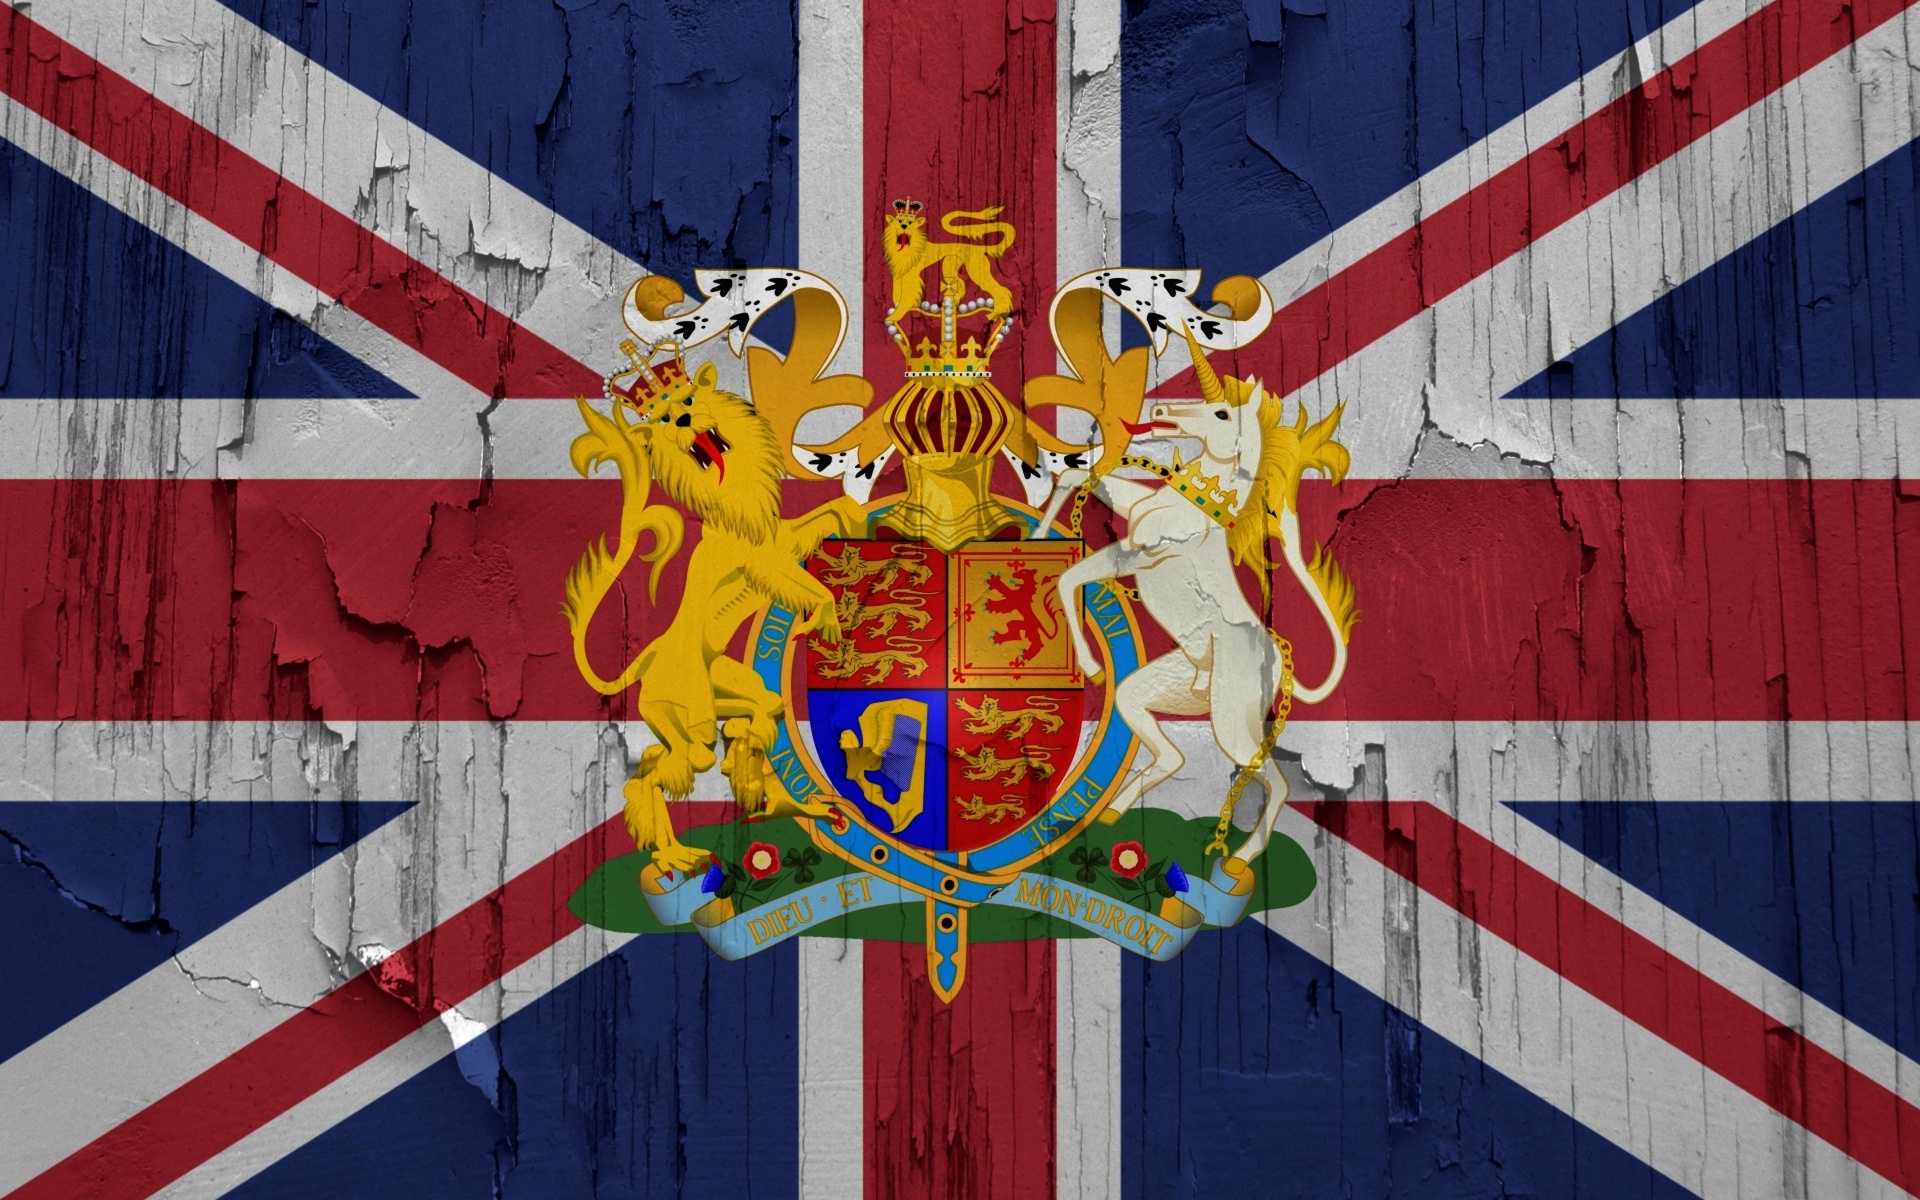 флаги, Великобритания - обои на рабочий стол